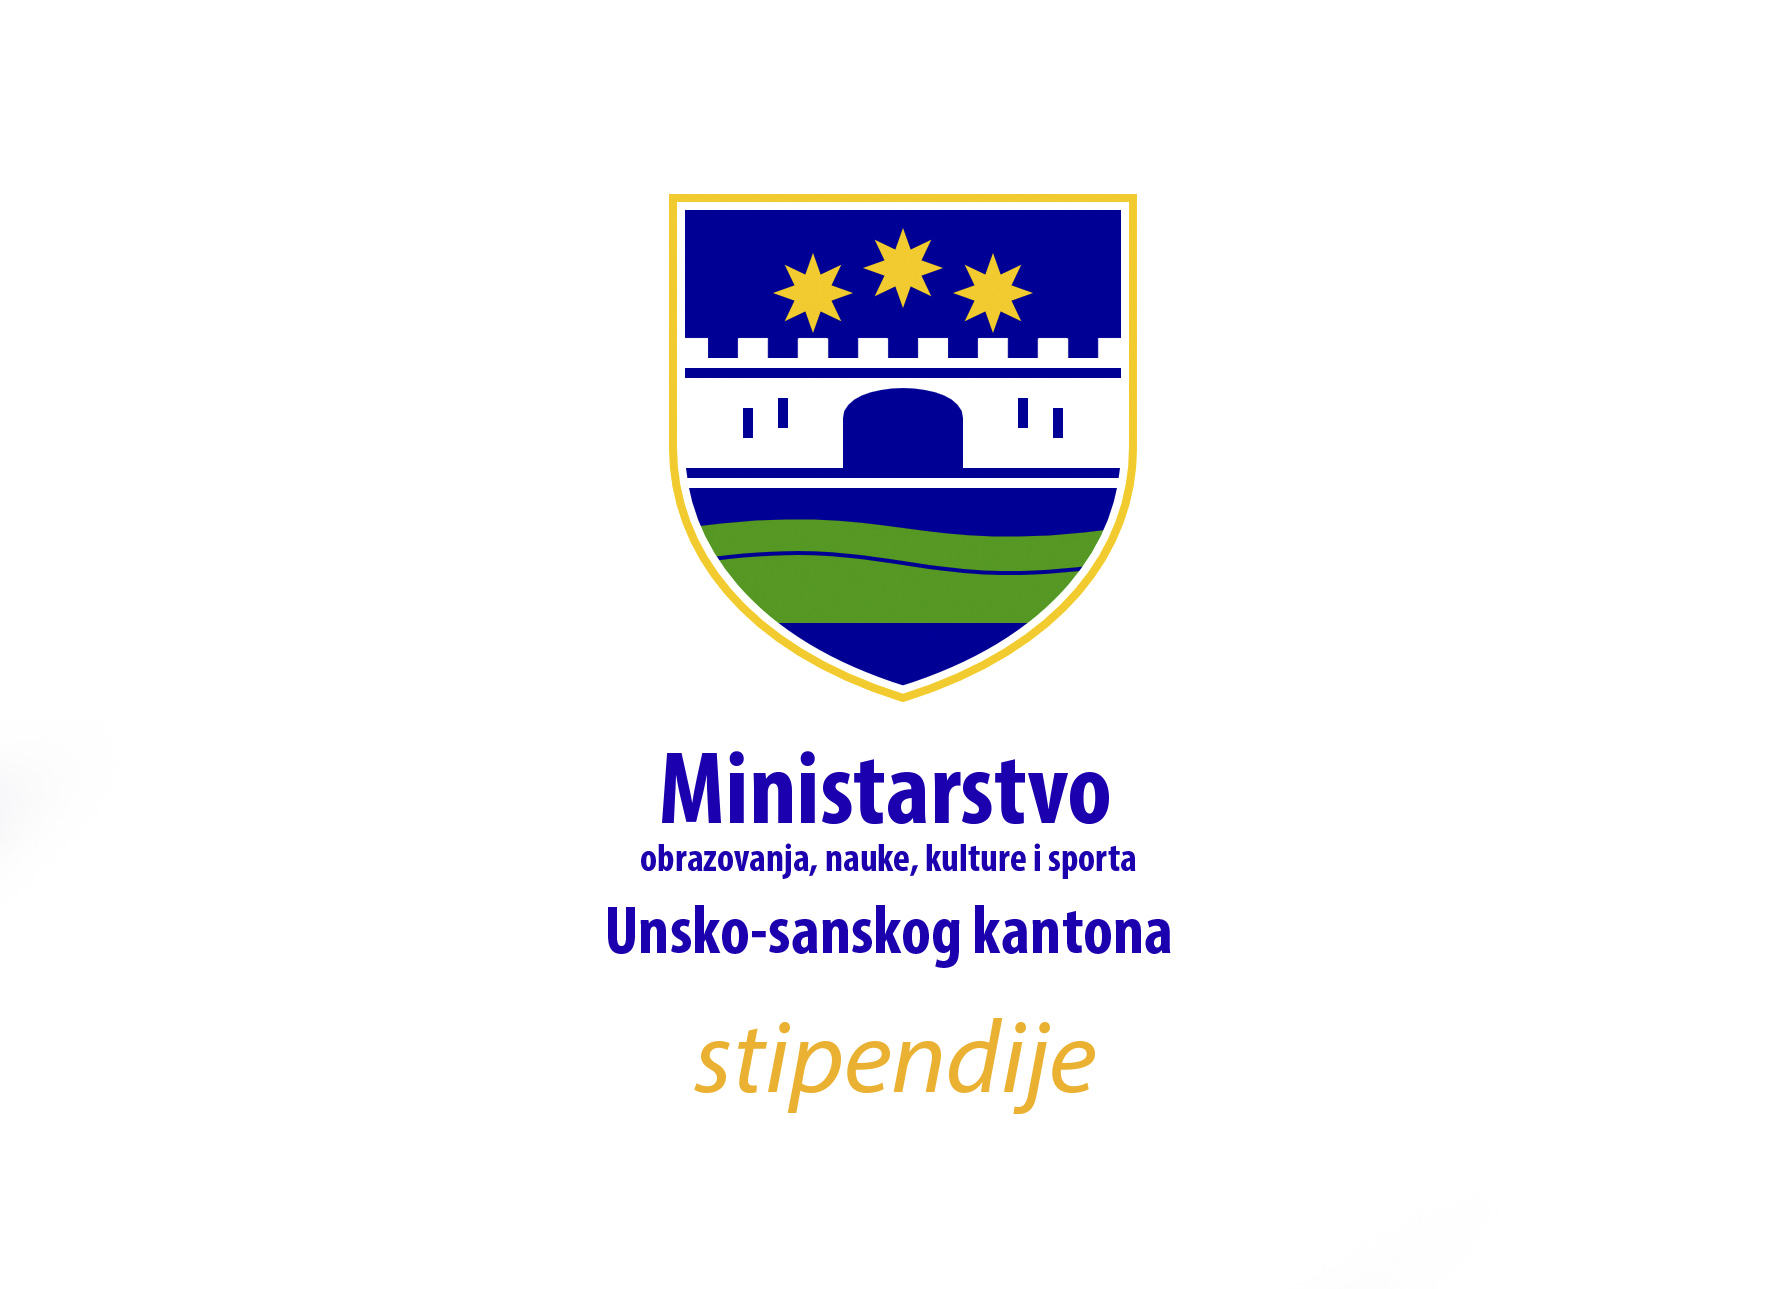 Konkurs za stipendiranje studenata sa područja Unsko- sanskog kantona za akademsku 2021/2022. godinu